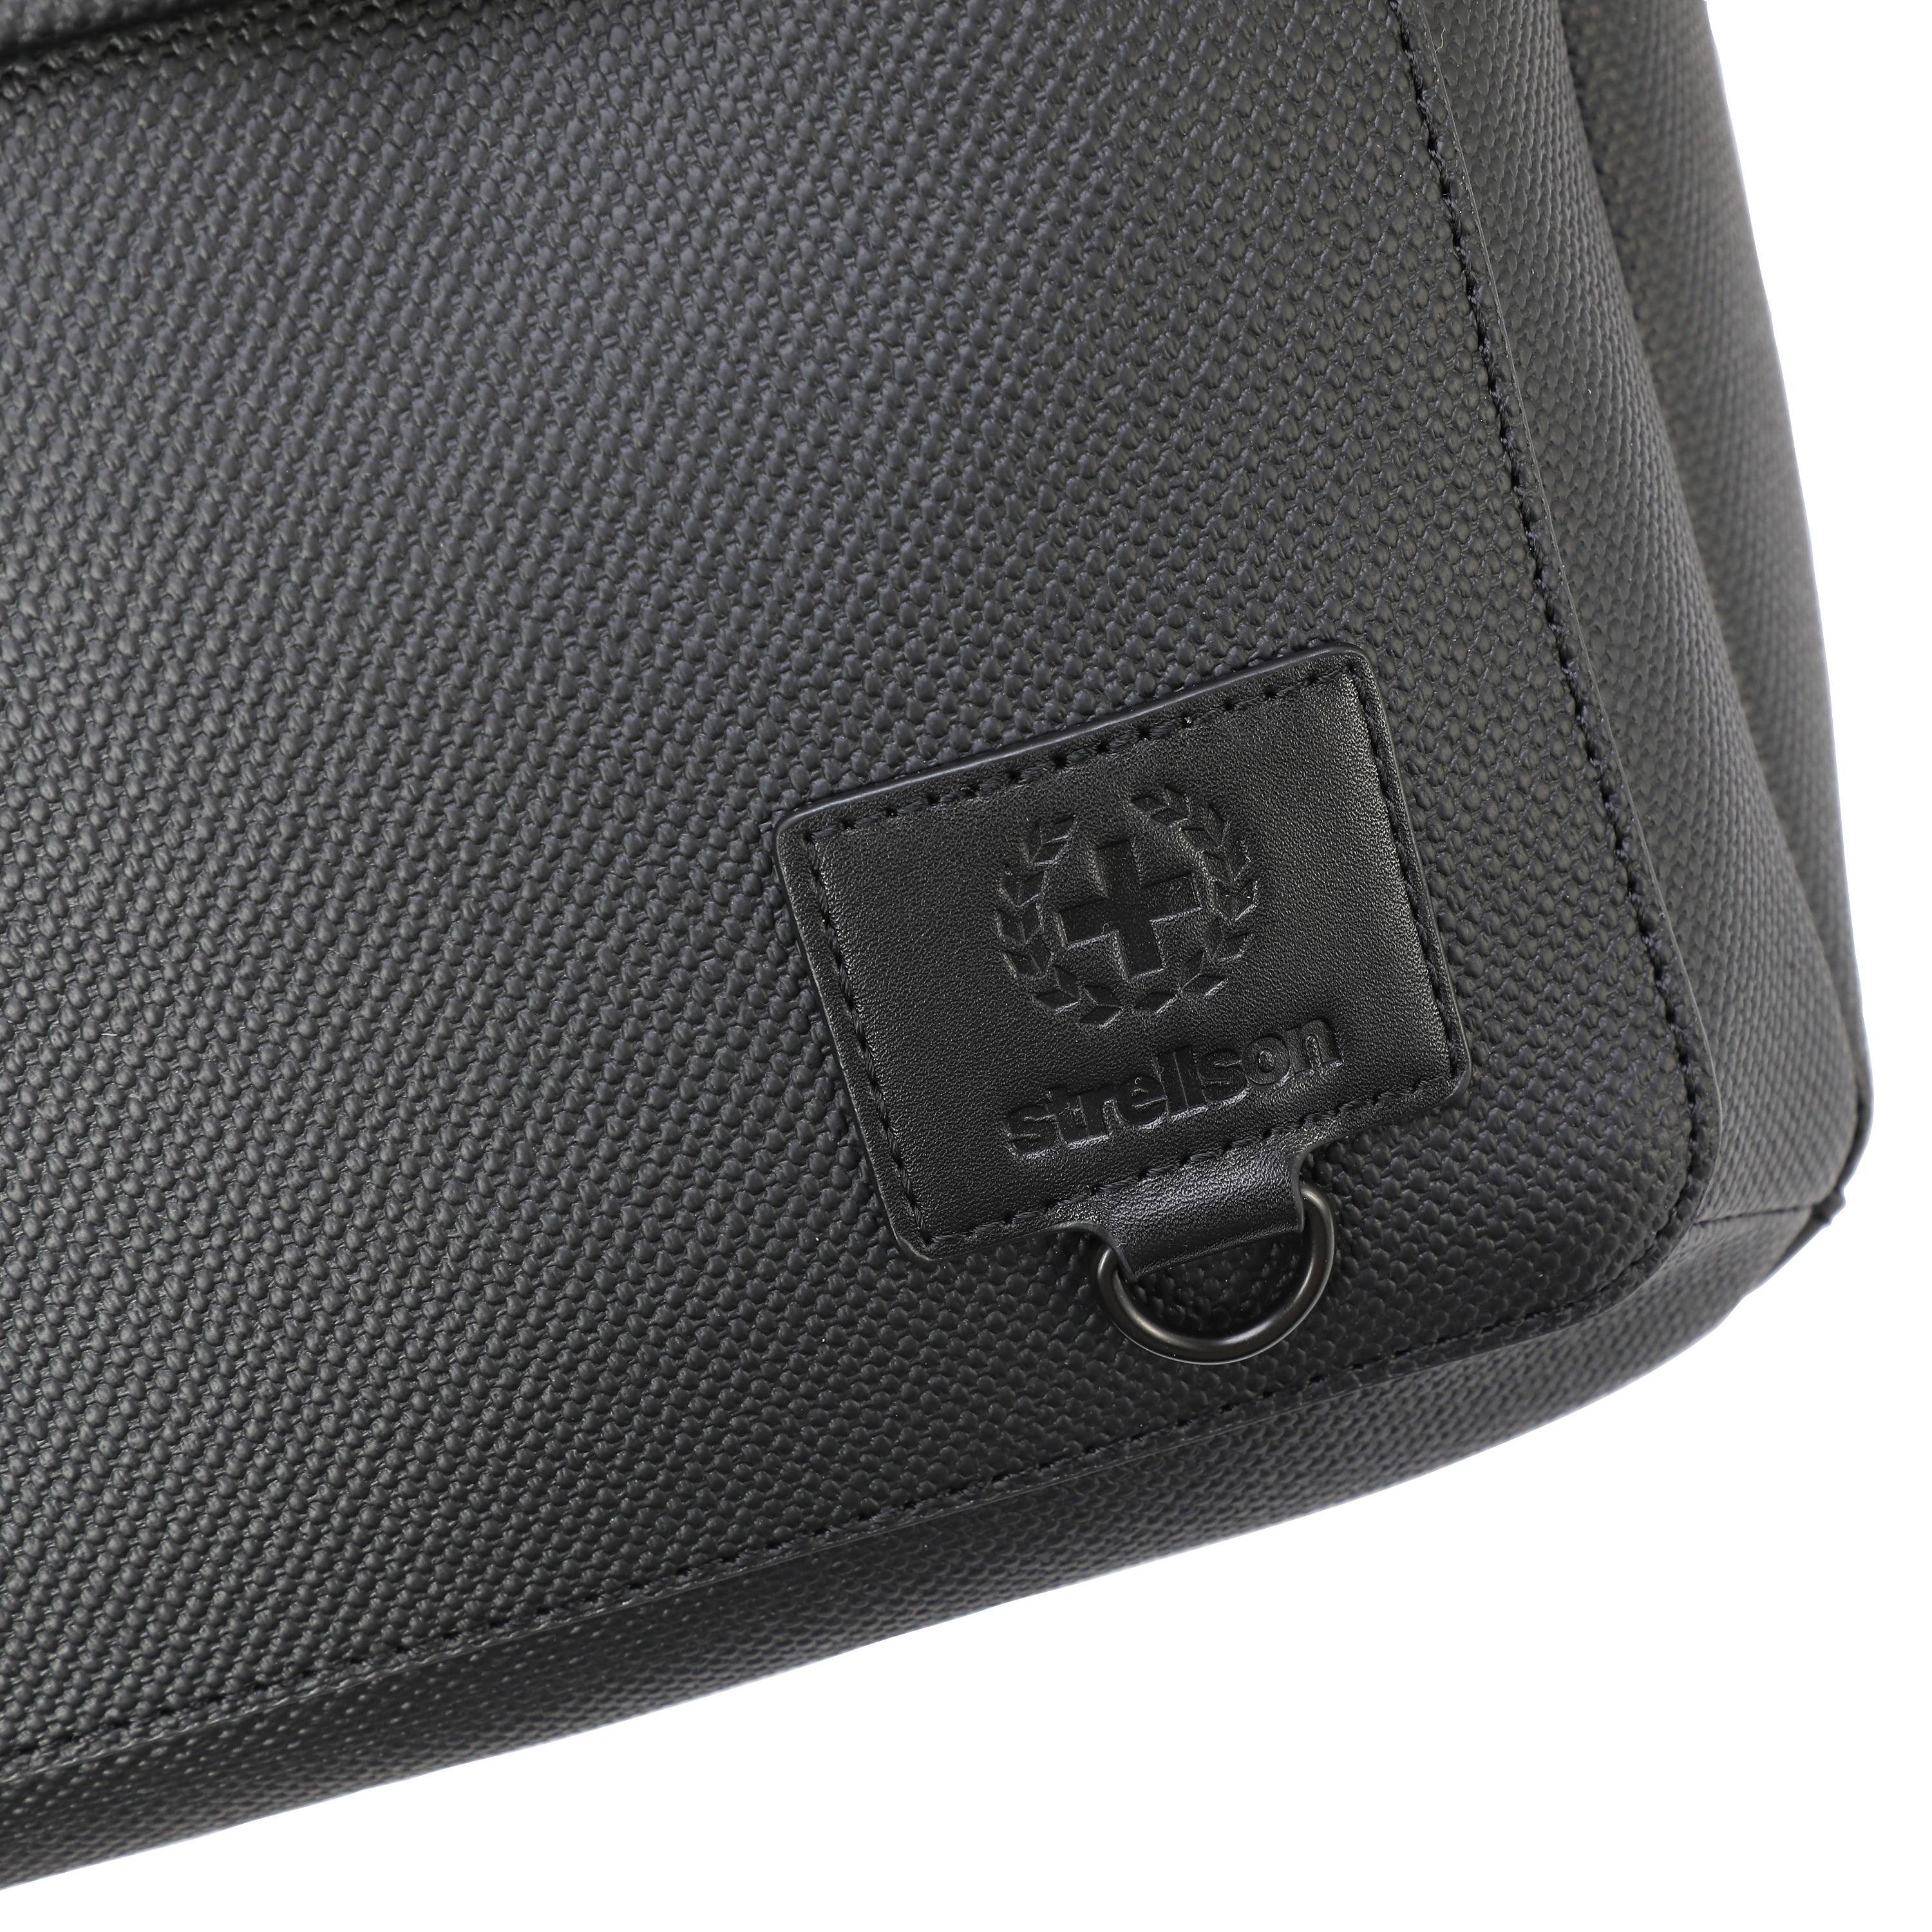 Рюкзак Strellson Bags blackhorse backpack lvz 4010002852, цвет черный, размер ONE SIZE - фото 2